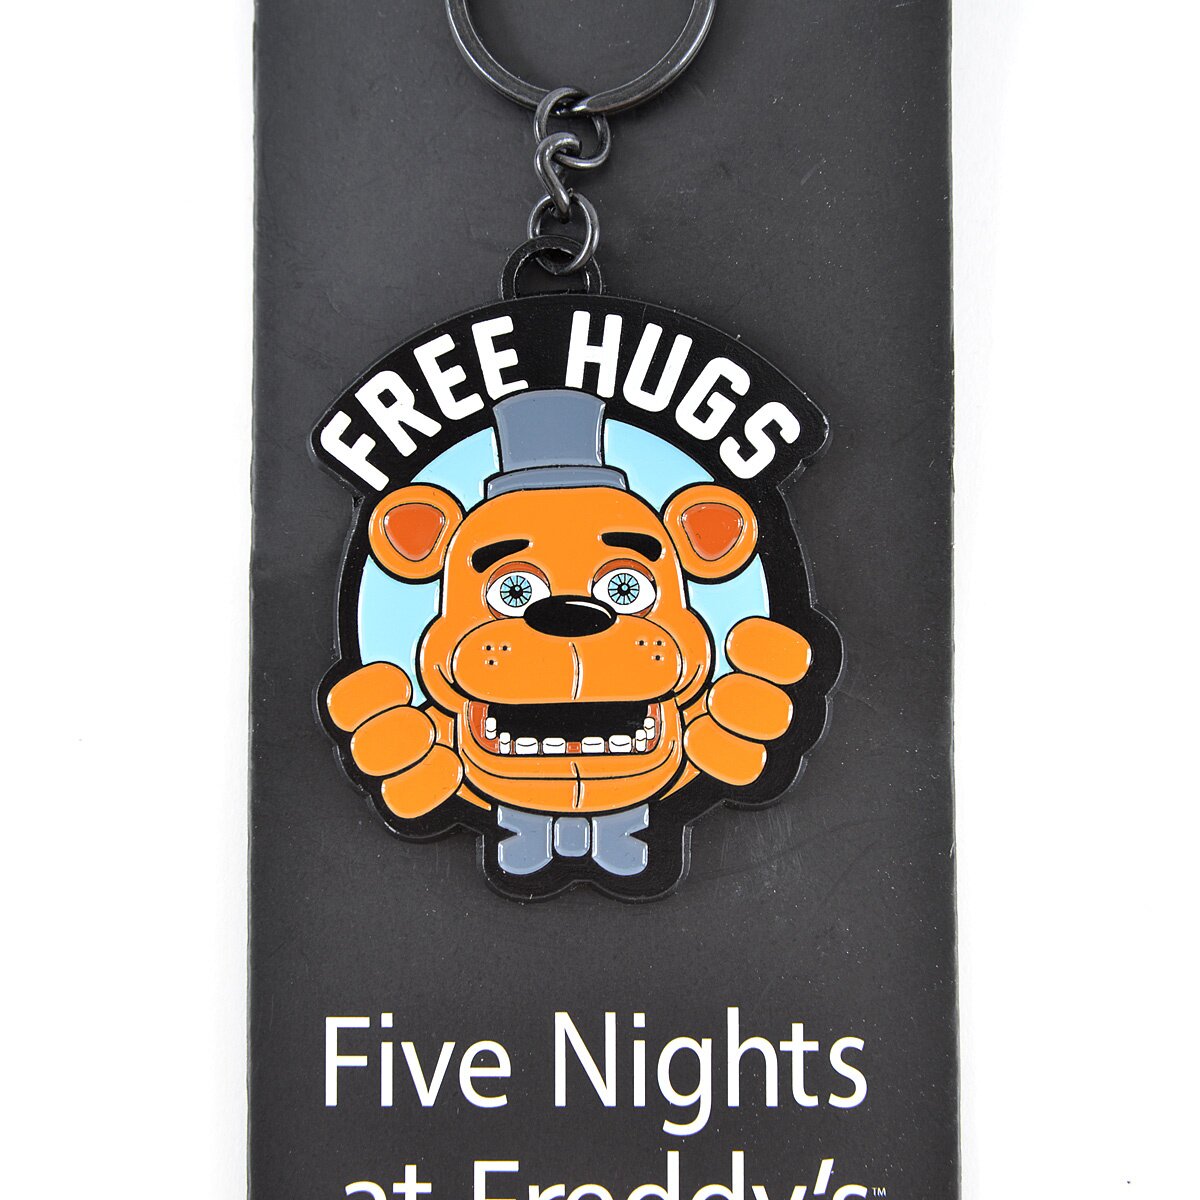 Five Nights at Freddys Free Hugs Freddy Fazbear Keychain 